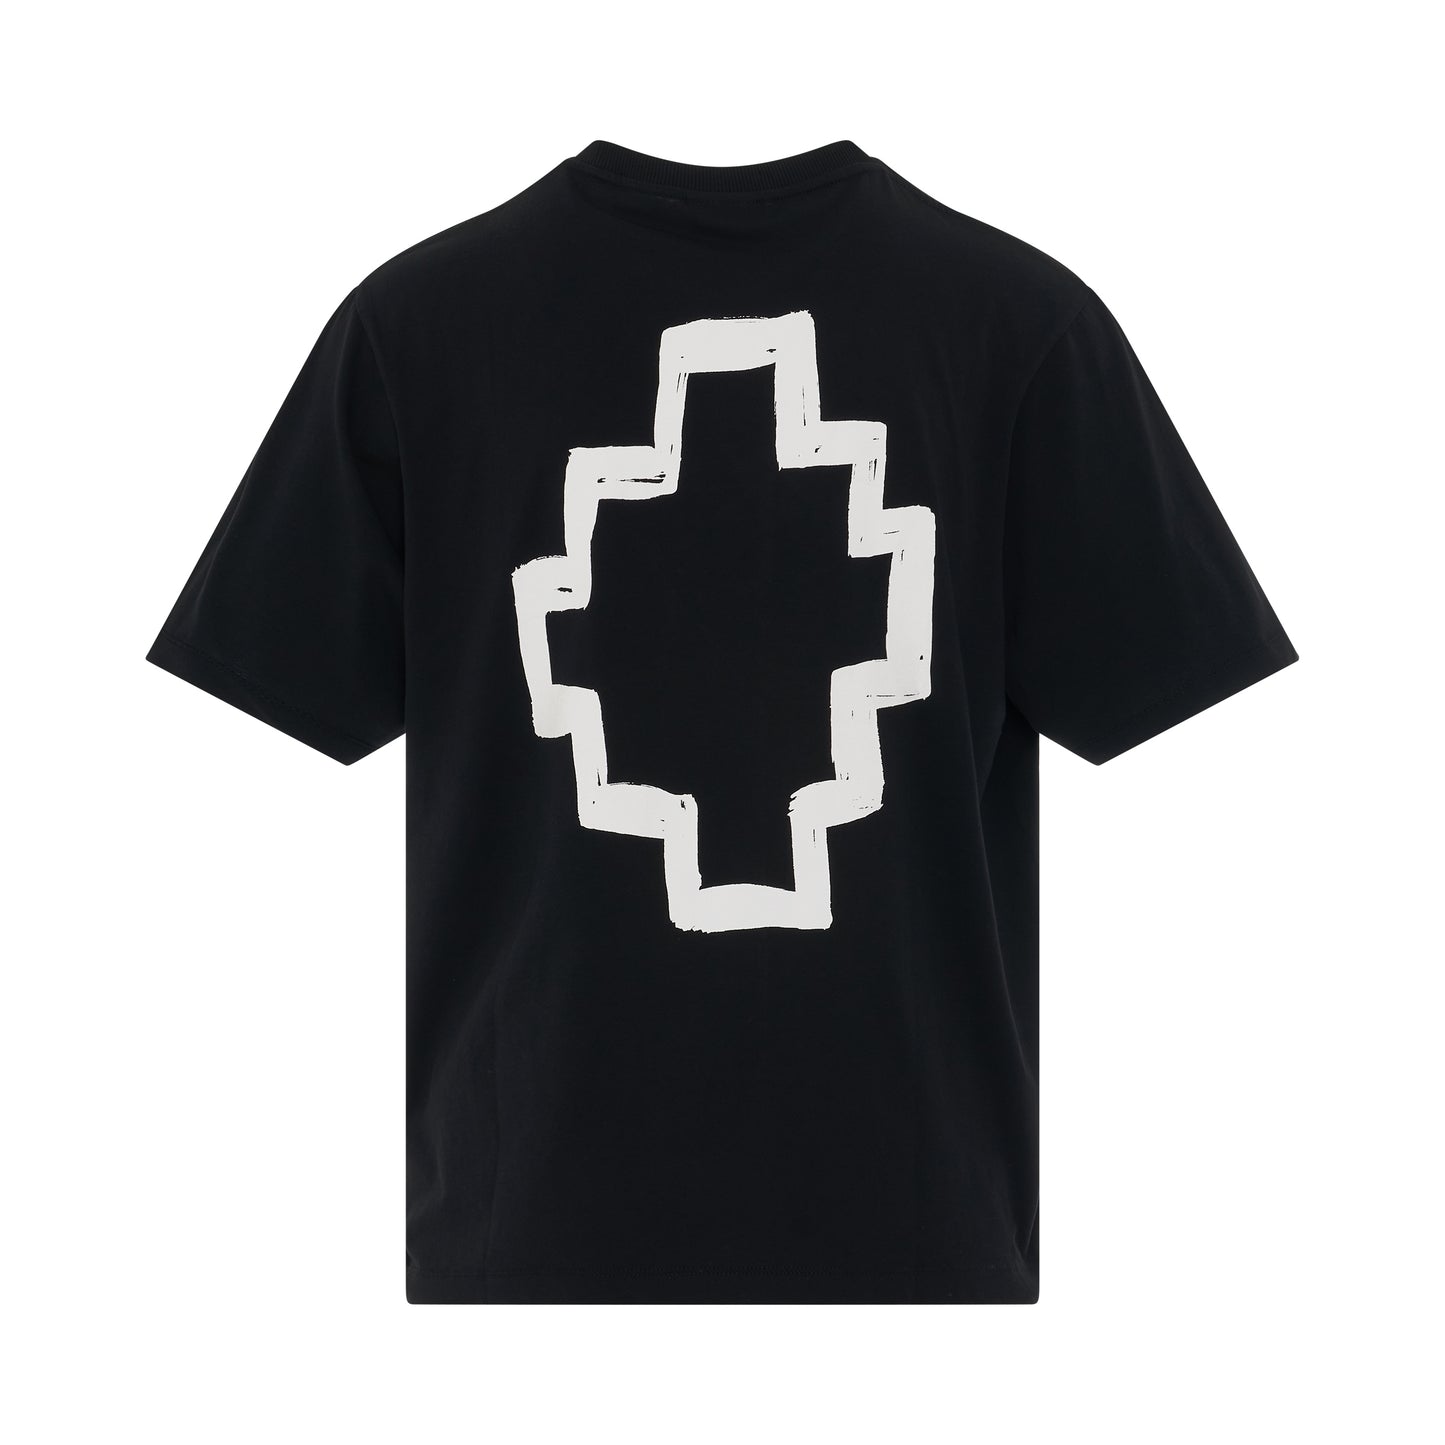 Tempera Cross Oversized T-Shirt in Black/White